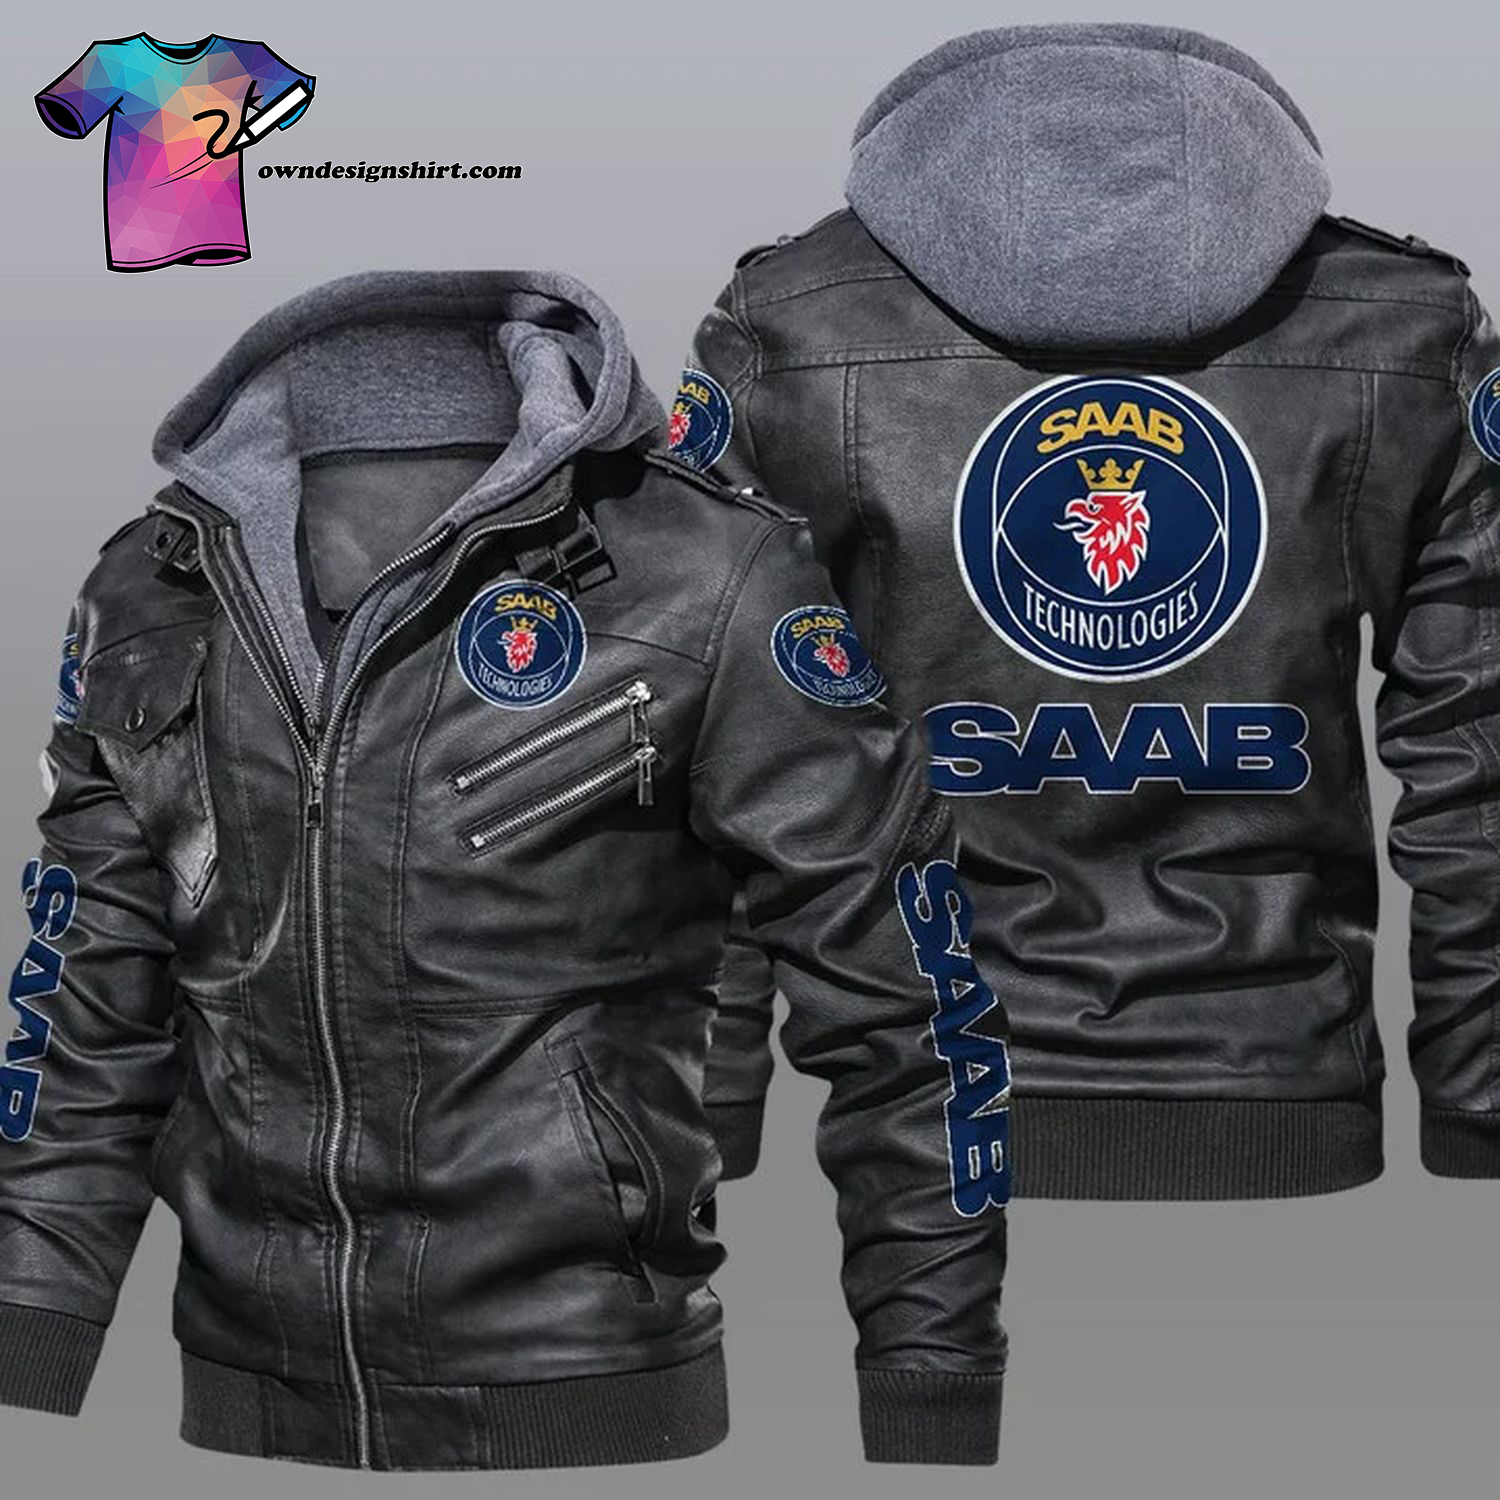 Saab Technologies Symbol Leather Jacket